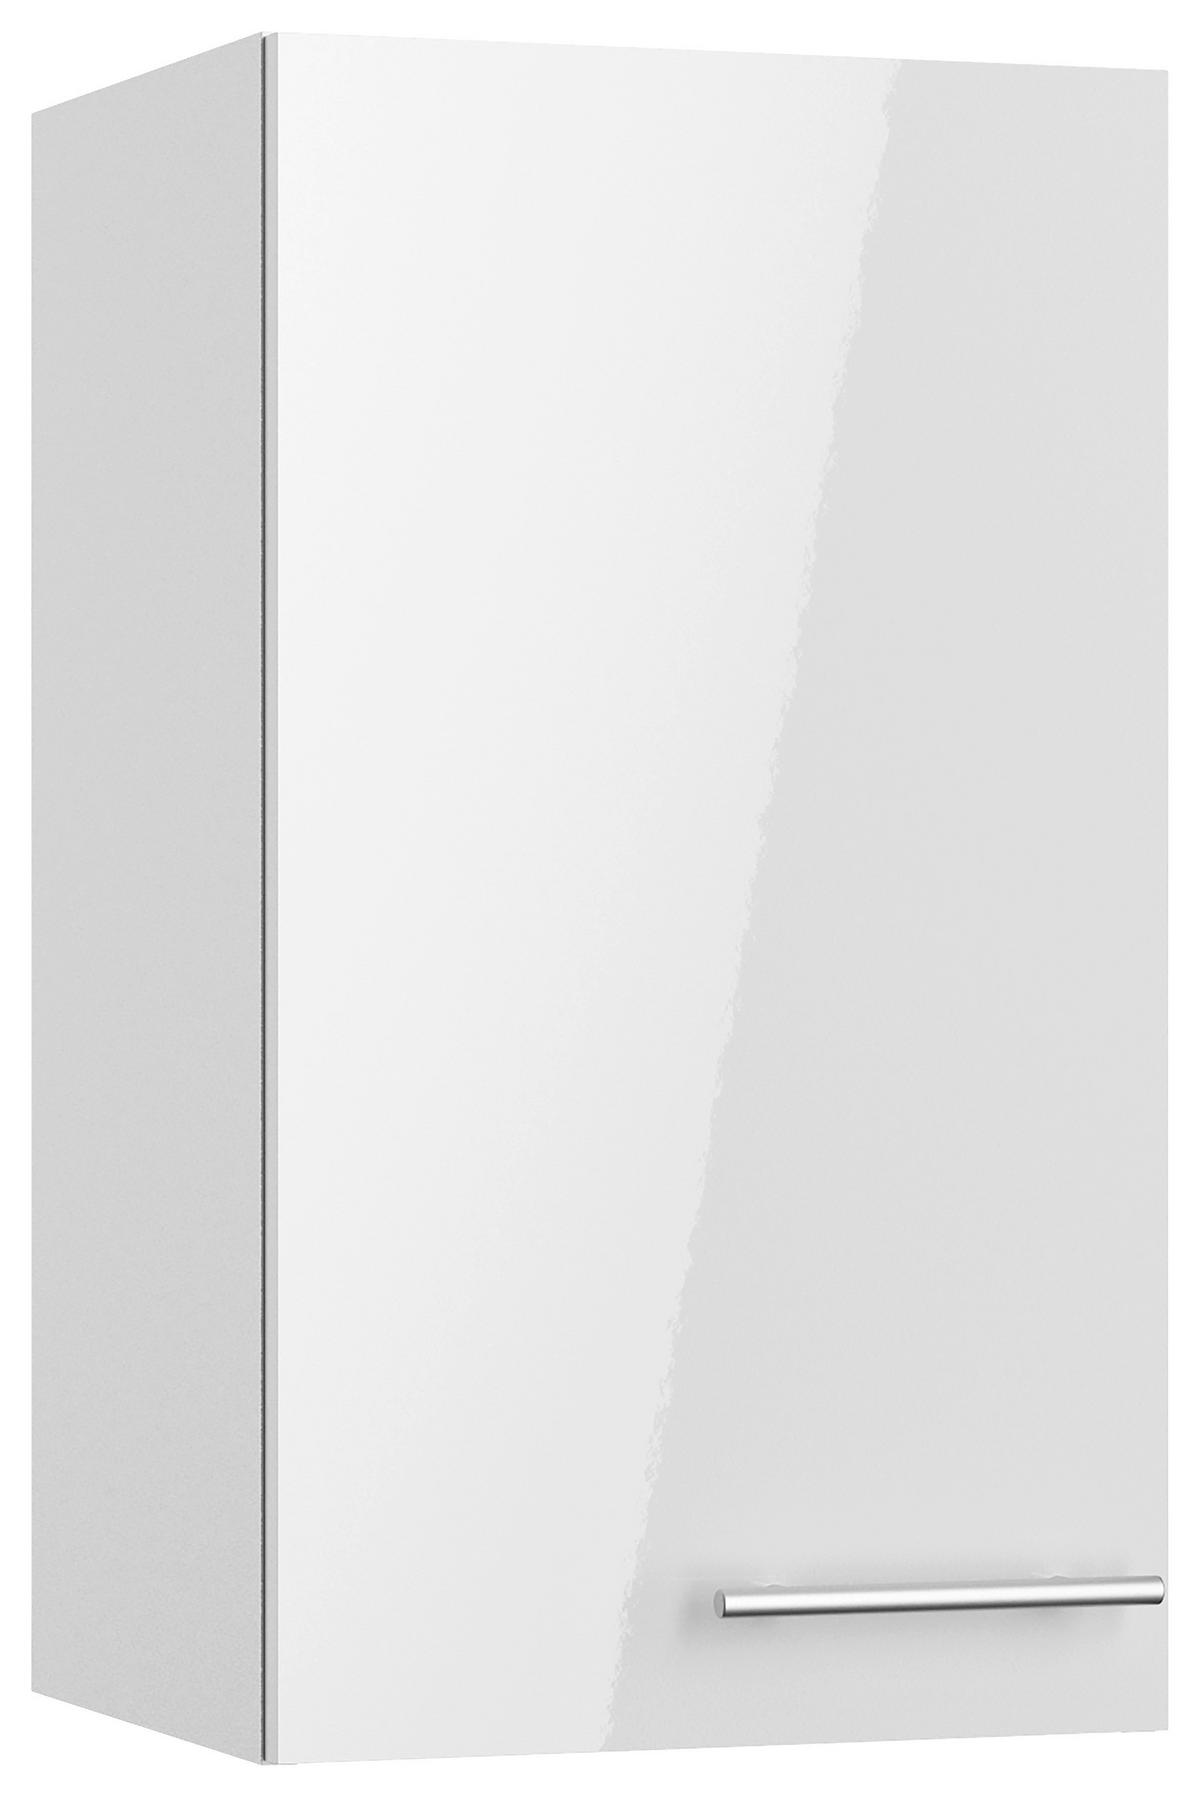 KÜCHENBLOCK 210 cm   in Weiß, Weiß Hochglanz  - Edelstahlfarben/Weiß Hochglanz, Basics, Holzwerkstoff/Metall (210cm) - Optifit